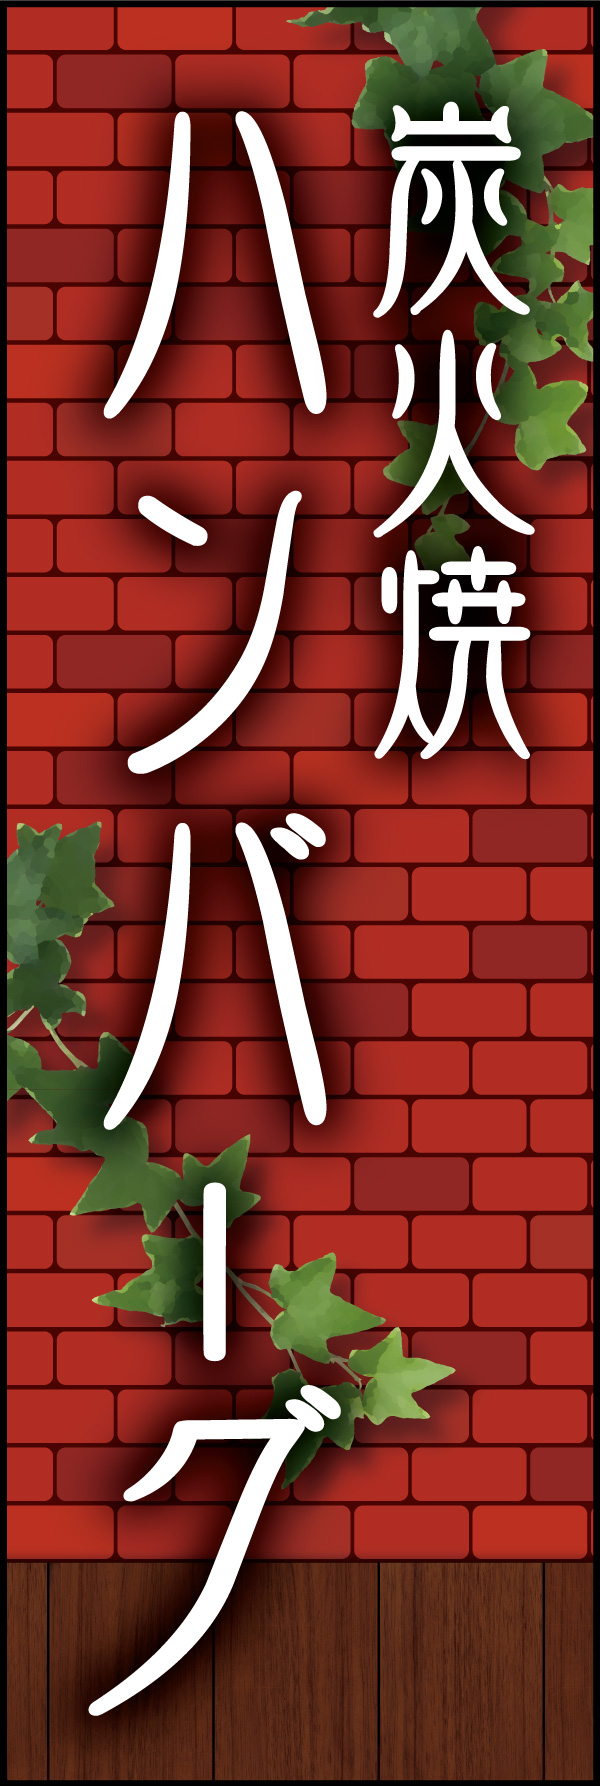 炭火焼きハンバーグ 04「炭火焼ハンバーグ」ののぼりです。赤煉瓦をバックに、懐かしい洋食屋さんをイメージしてデザインしました。(Y.M) 